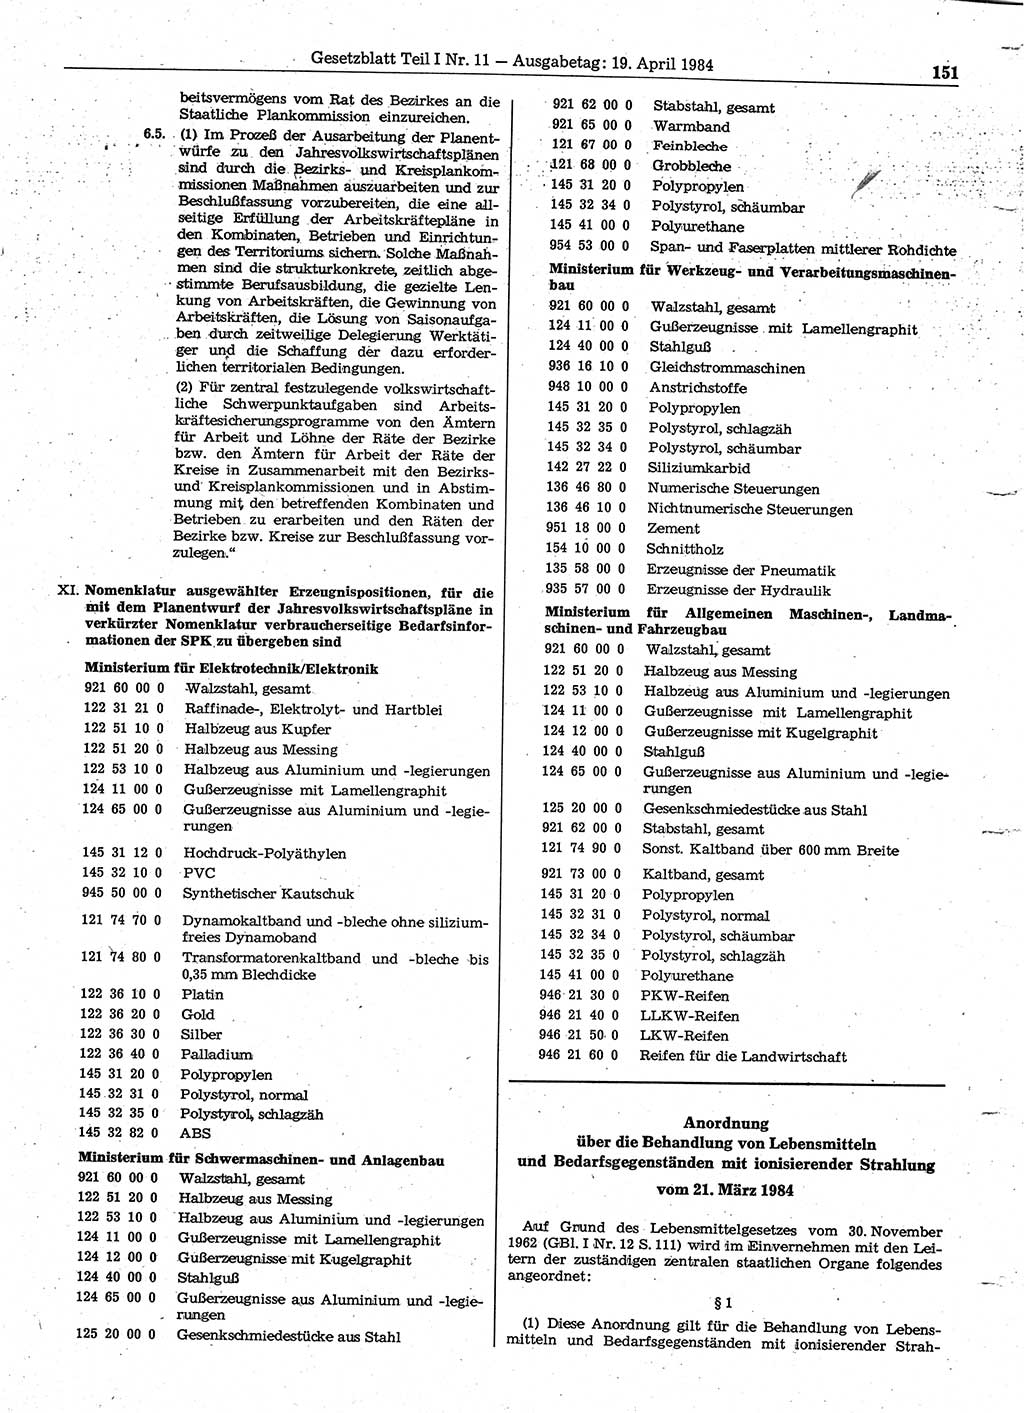 Gesetzblatt (GBl.) der Deutschen Demokratischen Republik (DDR) Teil Ⅰ 1984, Seite 151 (GBl. DDR Ⅰ 1984, S. 151)